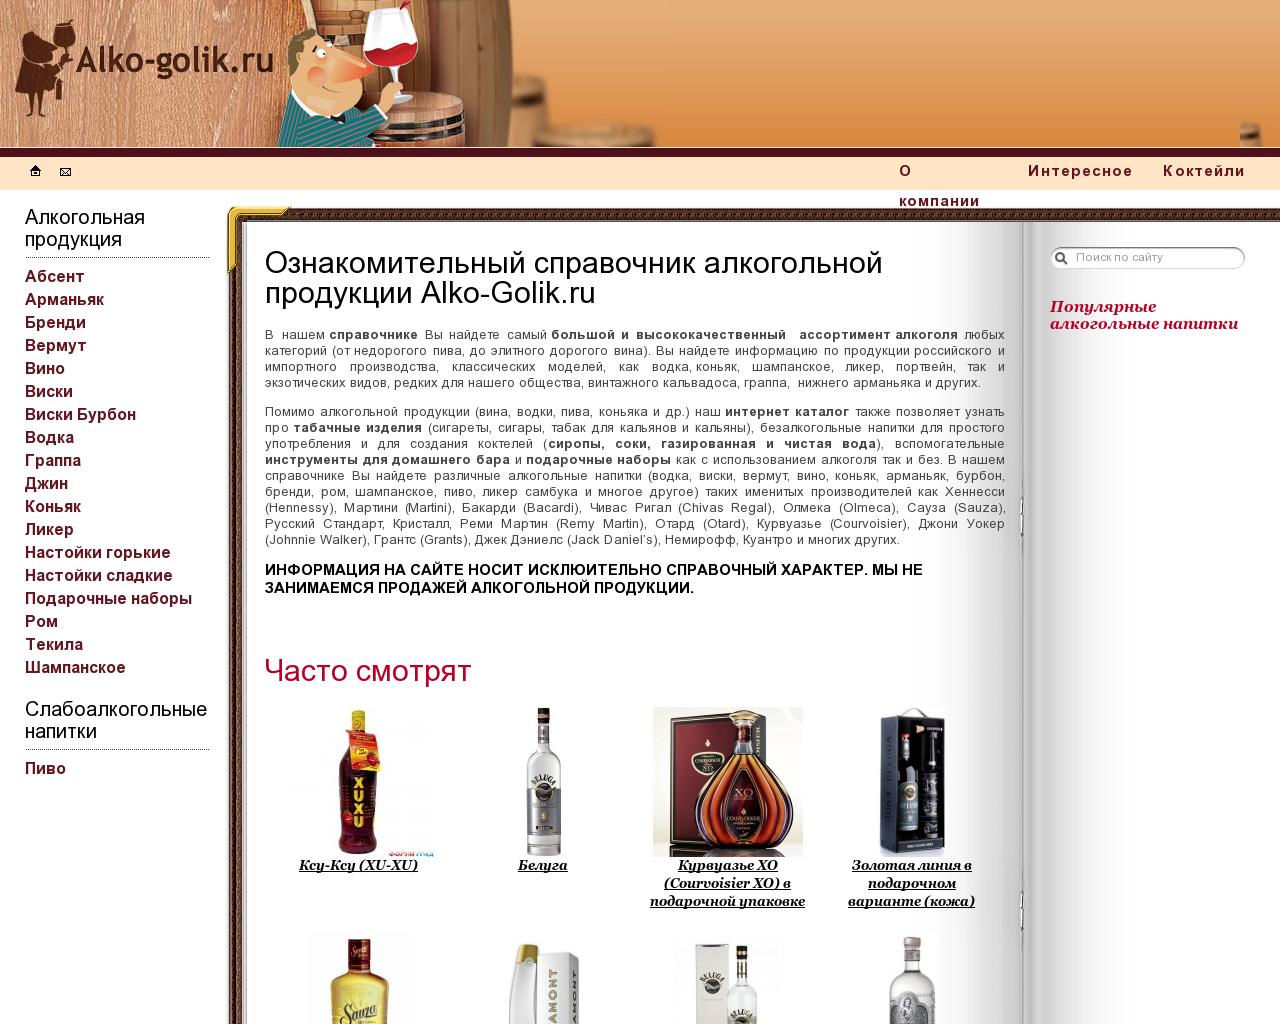 Изображение сайта alko-golik.ru в разрешении 1280x1024